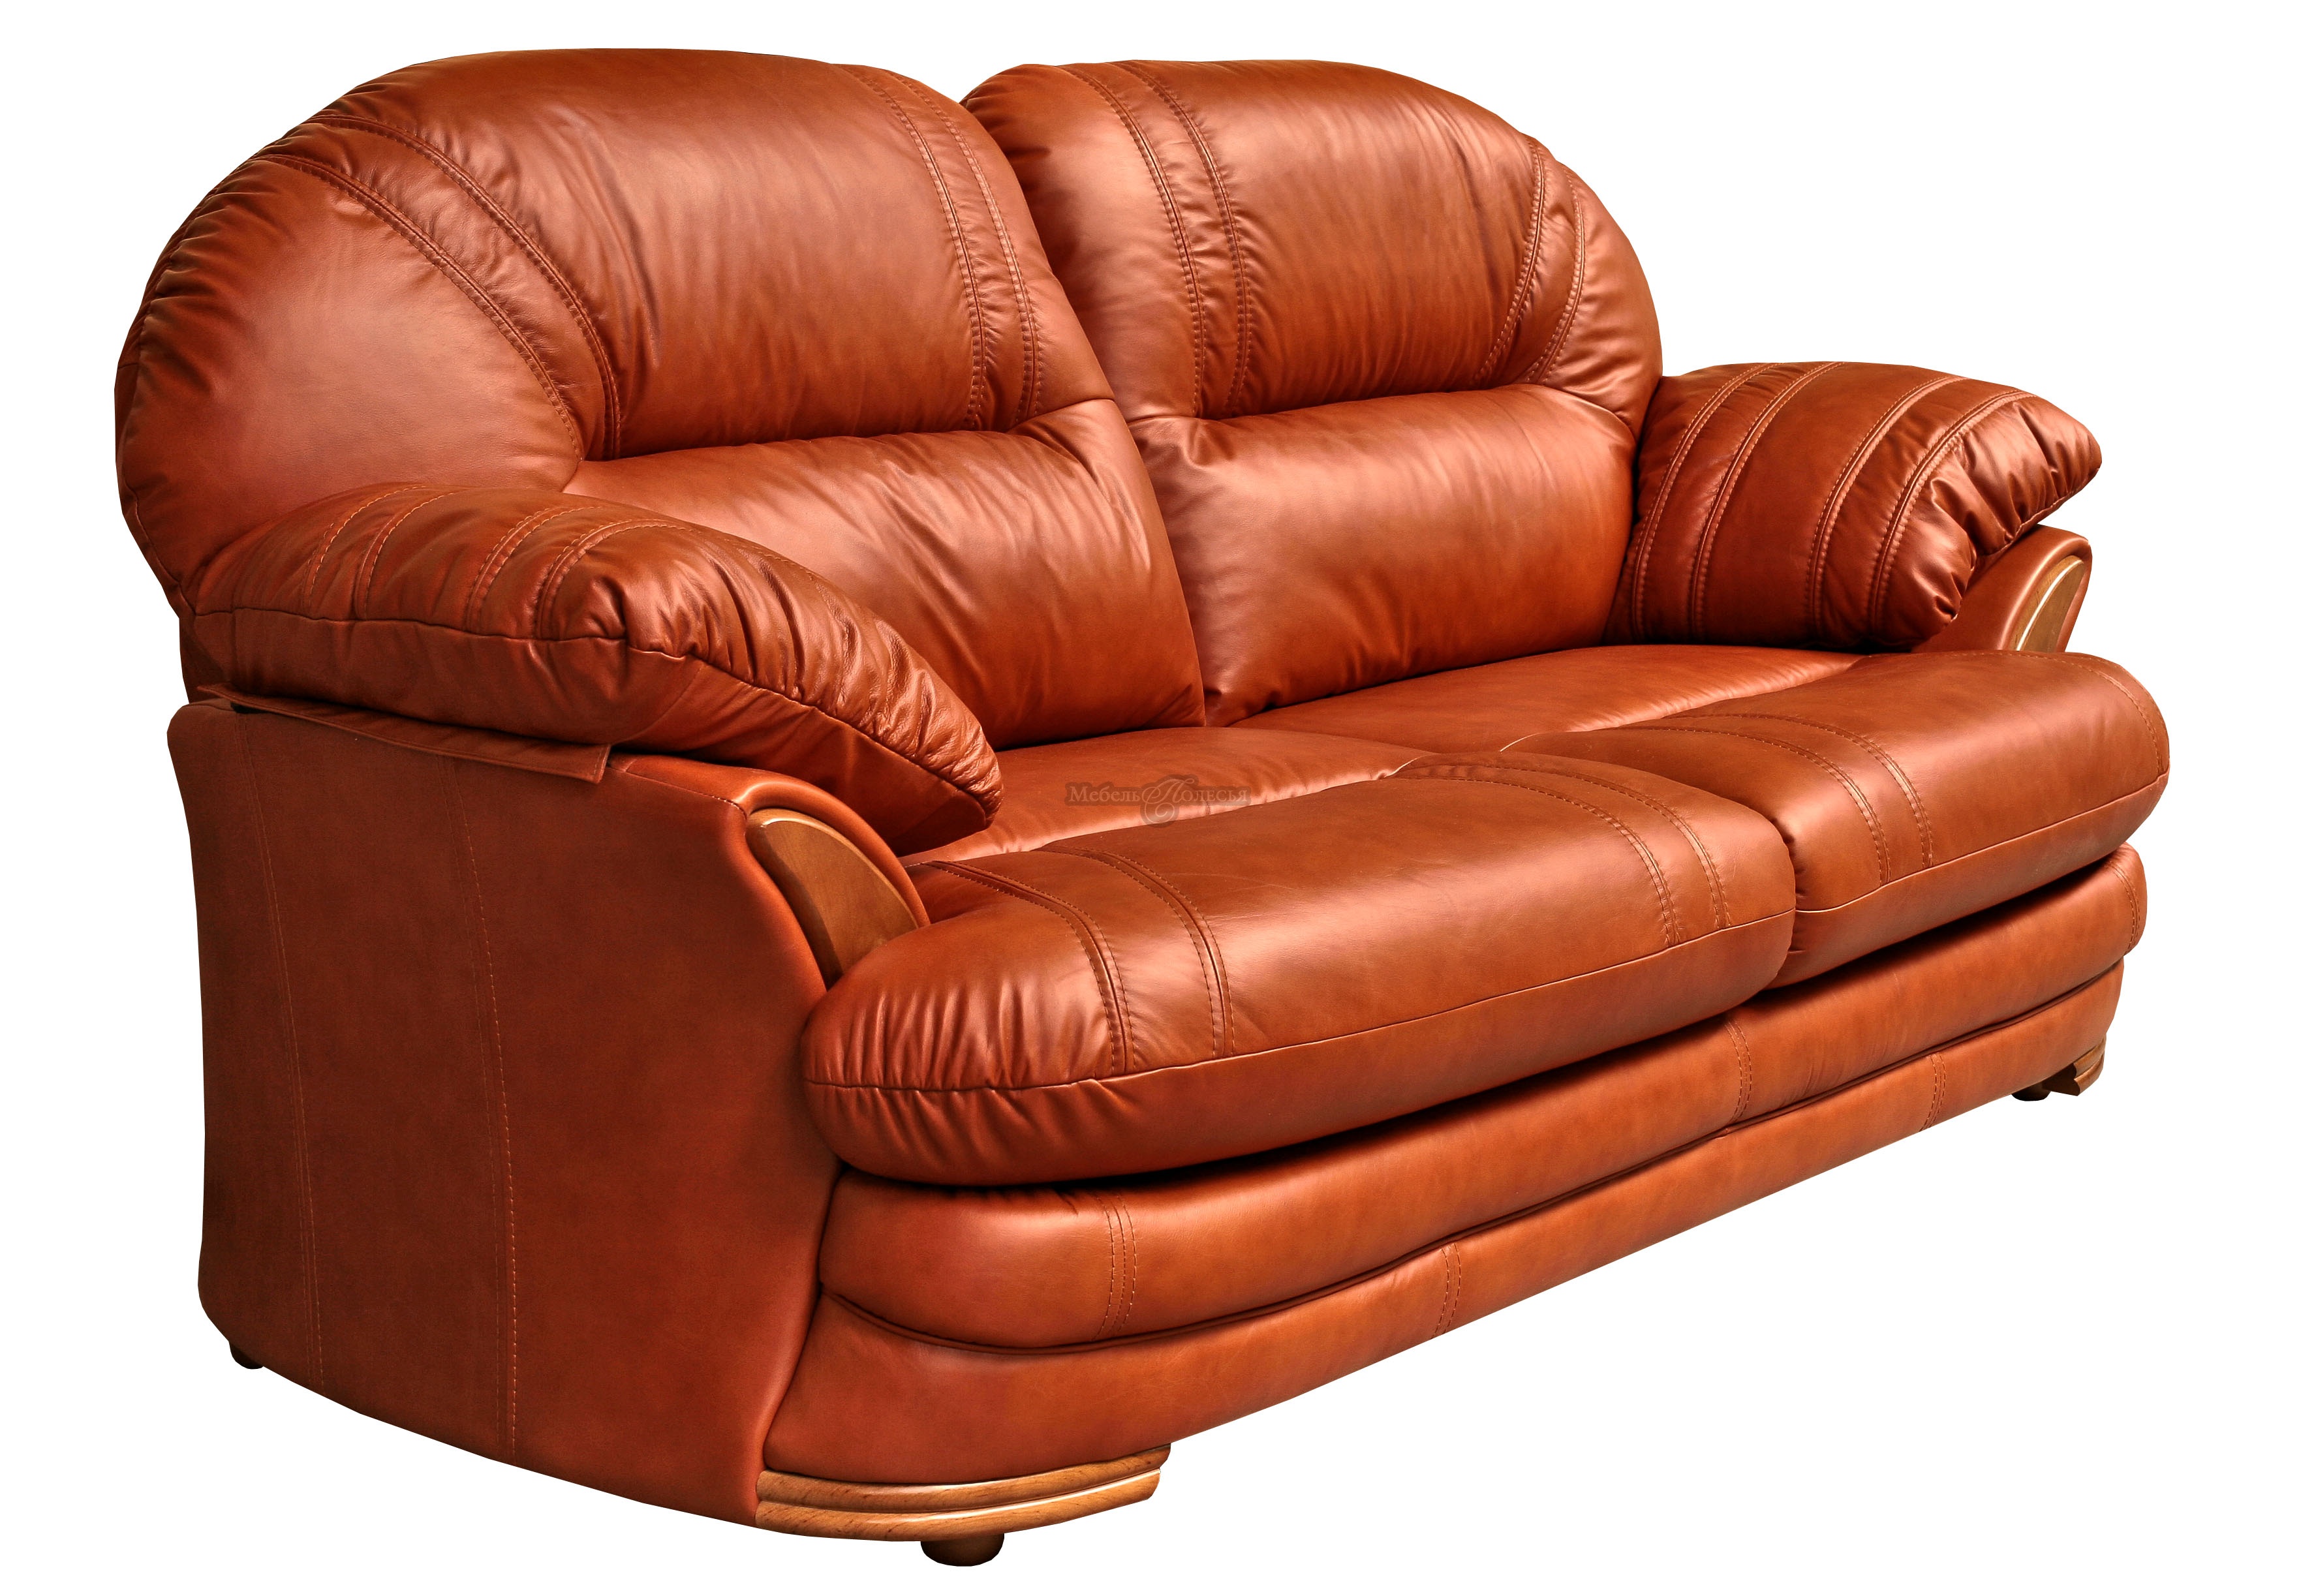 Купить диван в коже, с которого не захочется вставать...